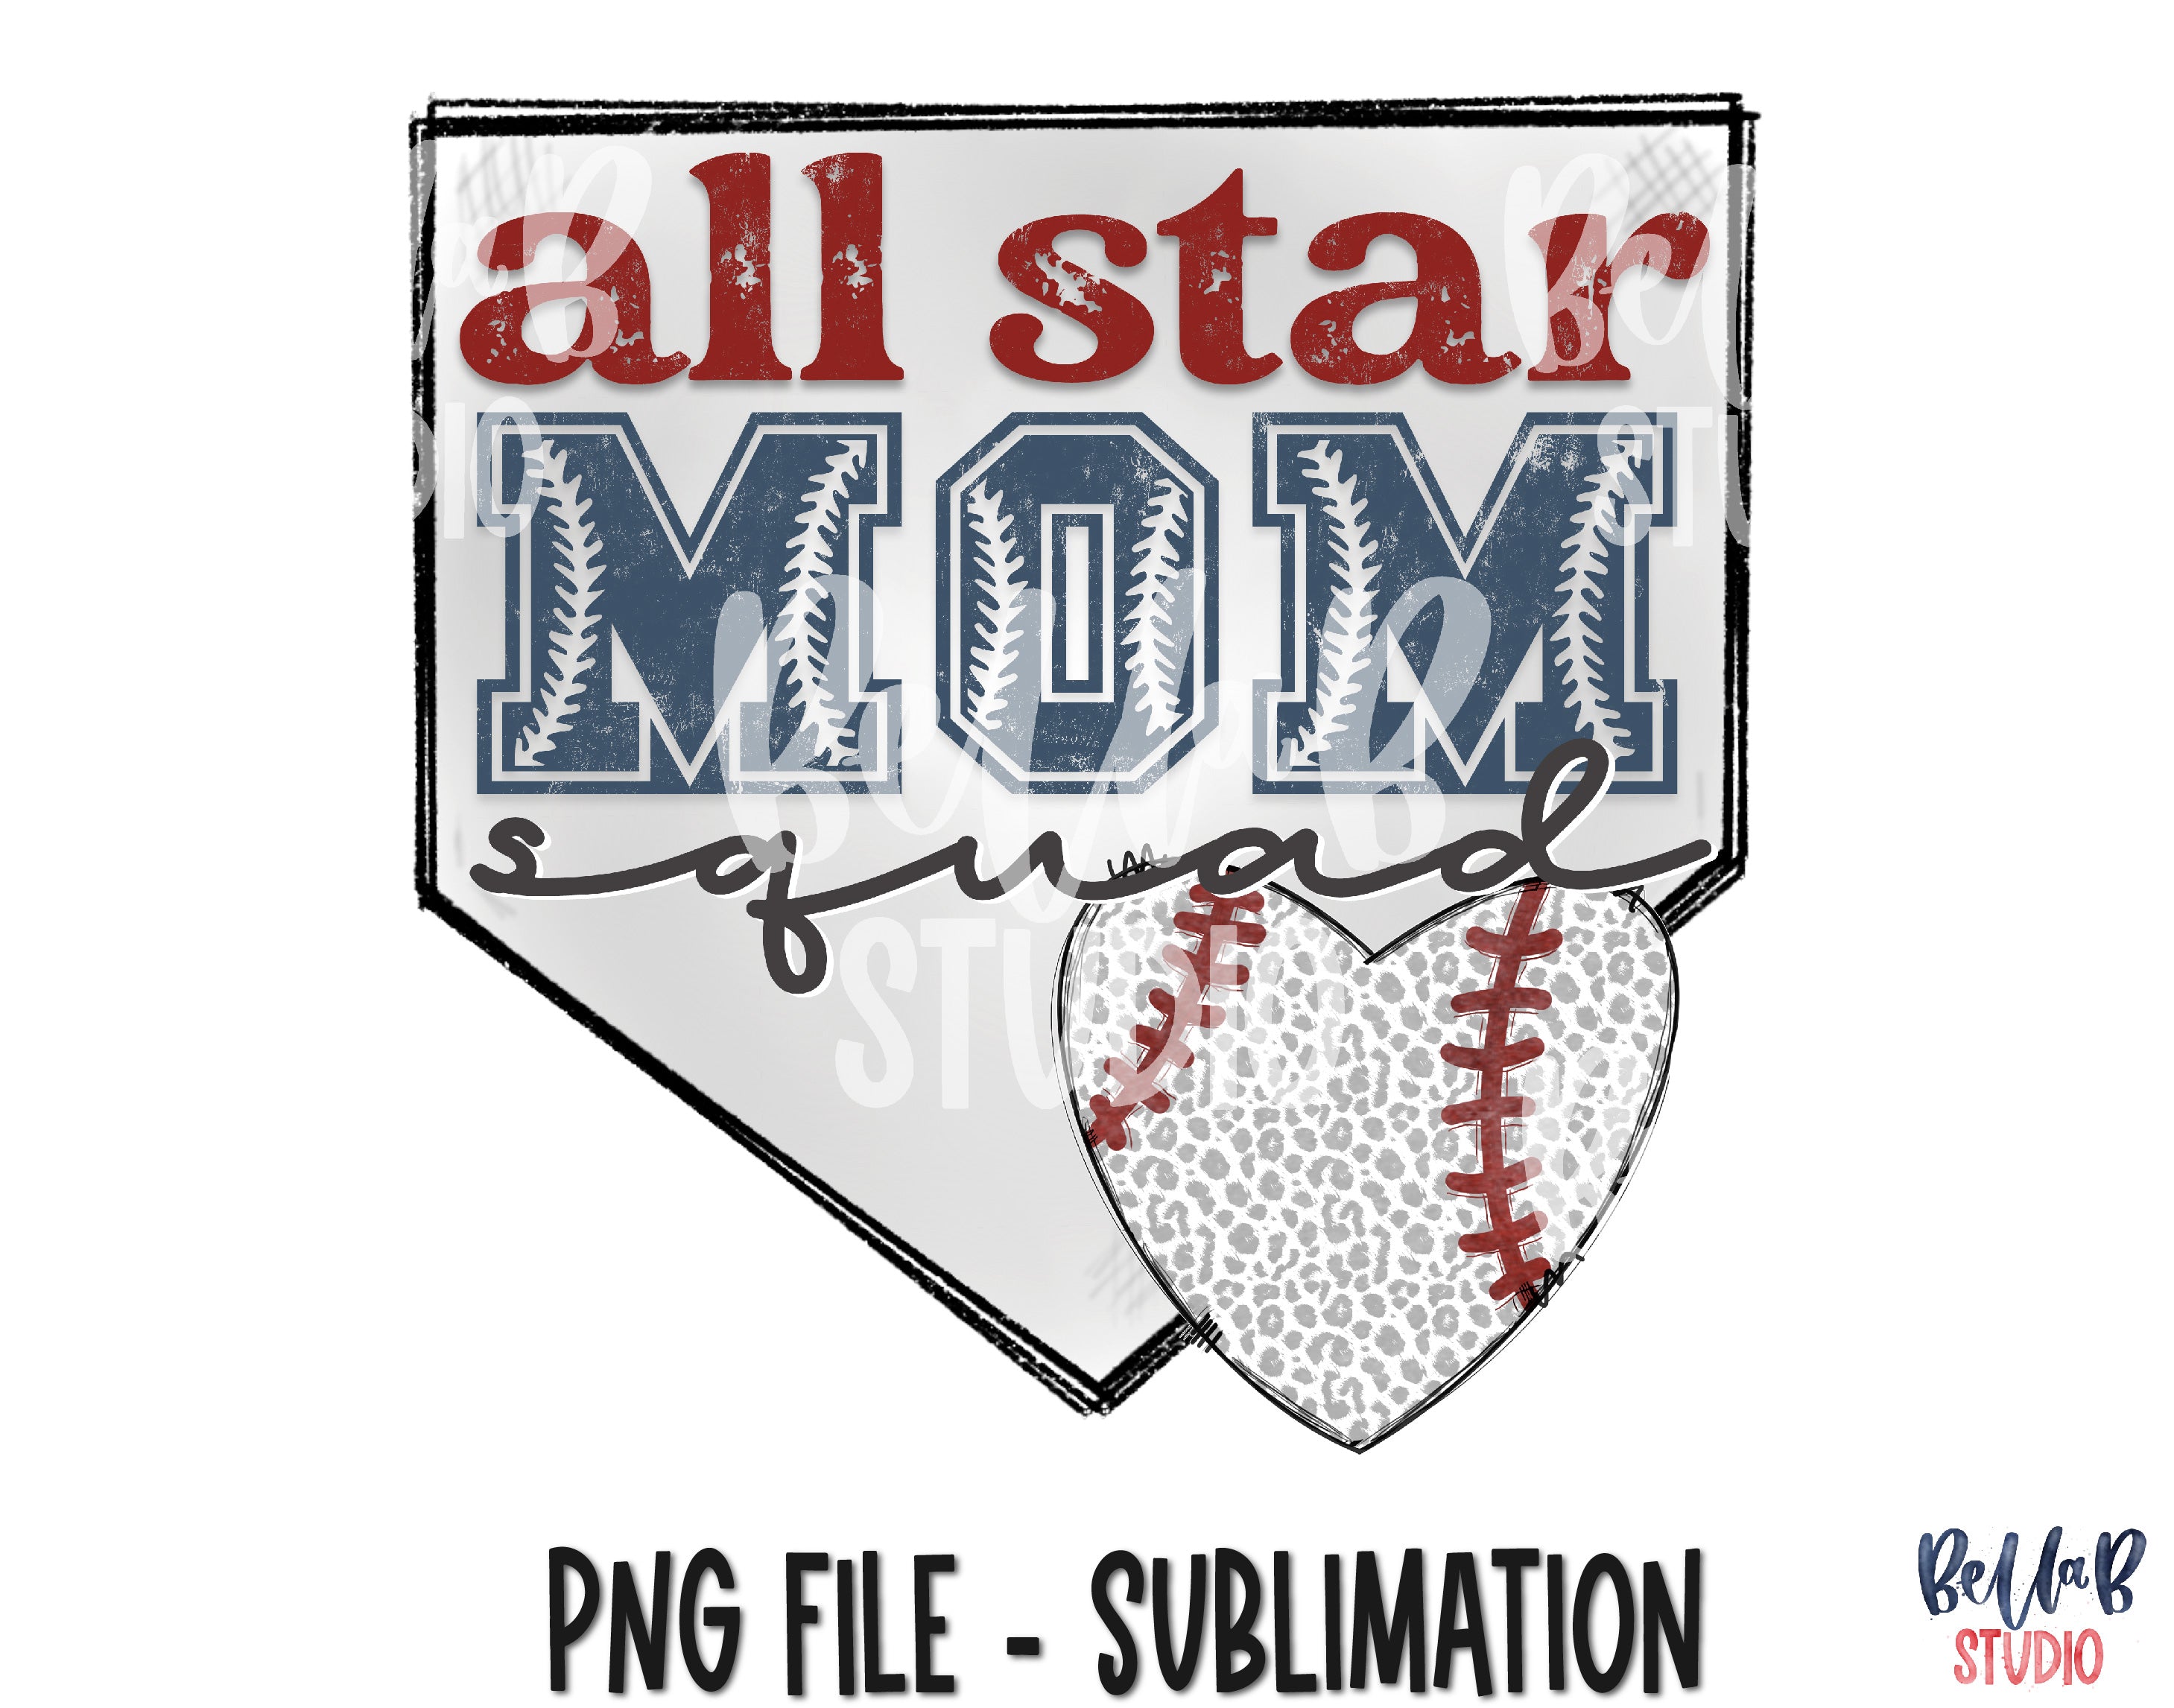 Baseball All Star Mom Squad Sublimation Transfer, Baseballl Mom